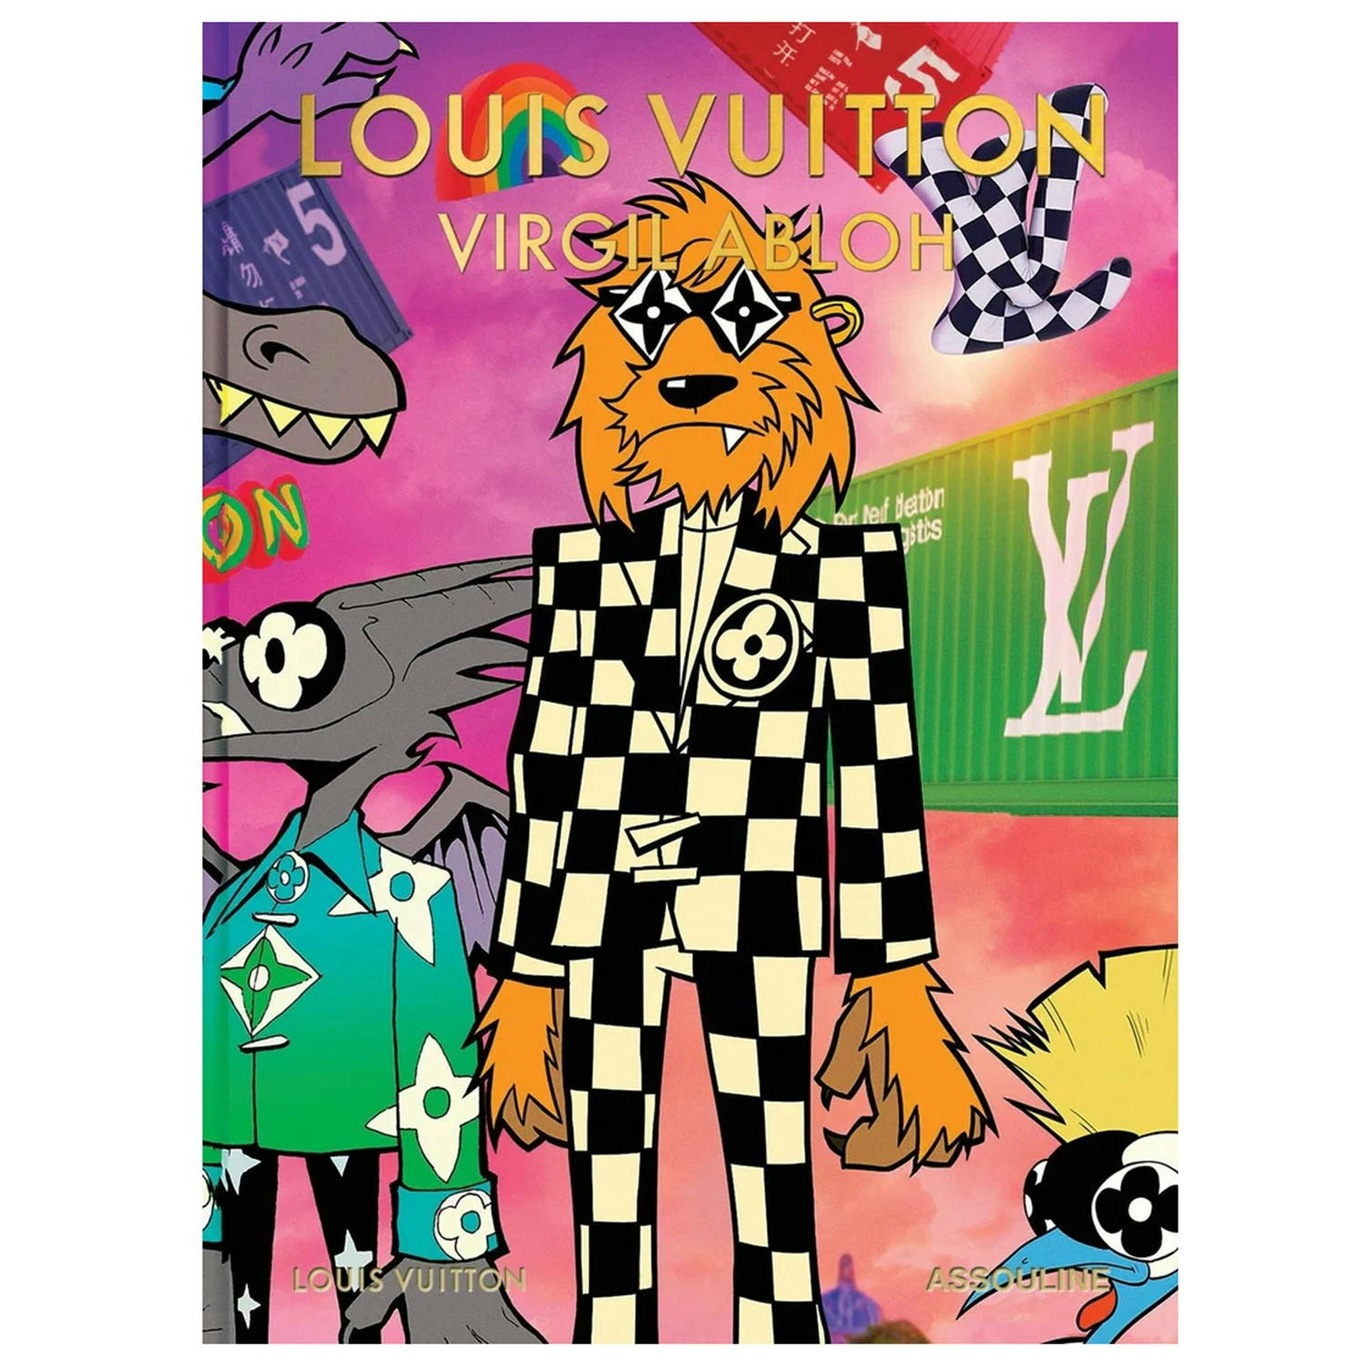 Louis Vuitton: Virgil Abloh (Classic Cartoon Cover) Boek